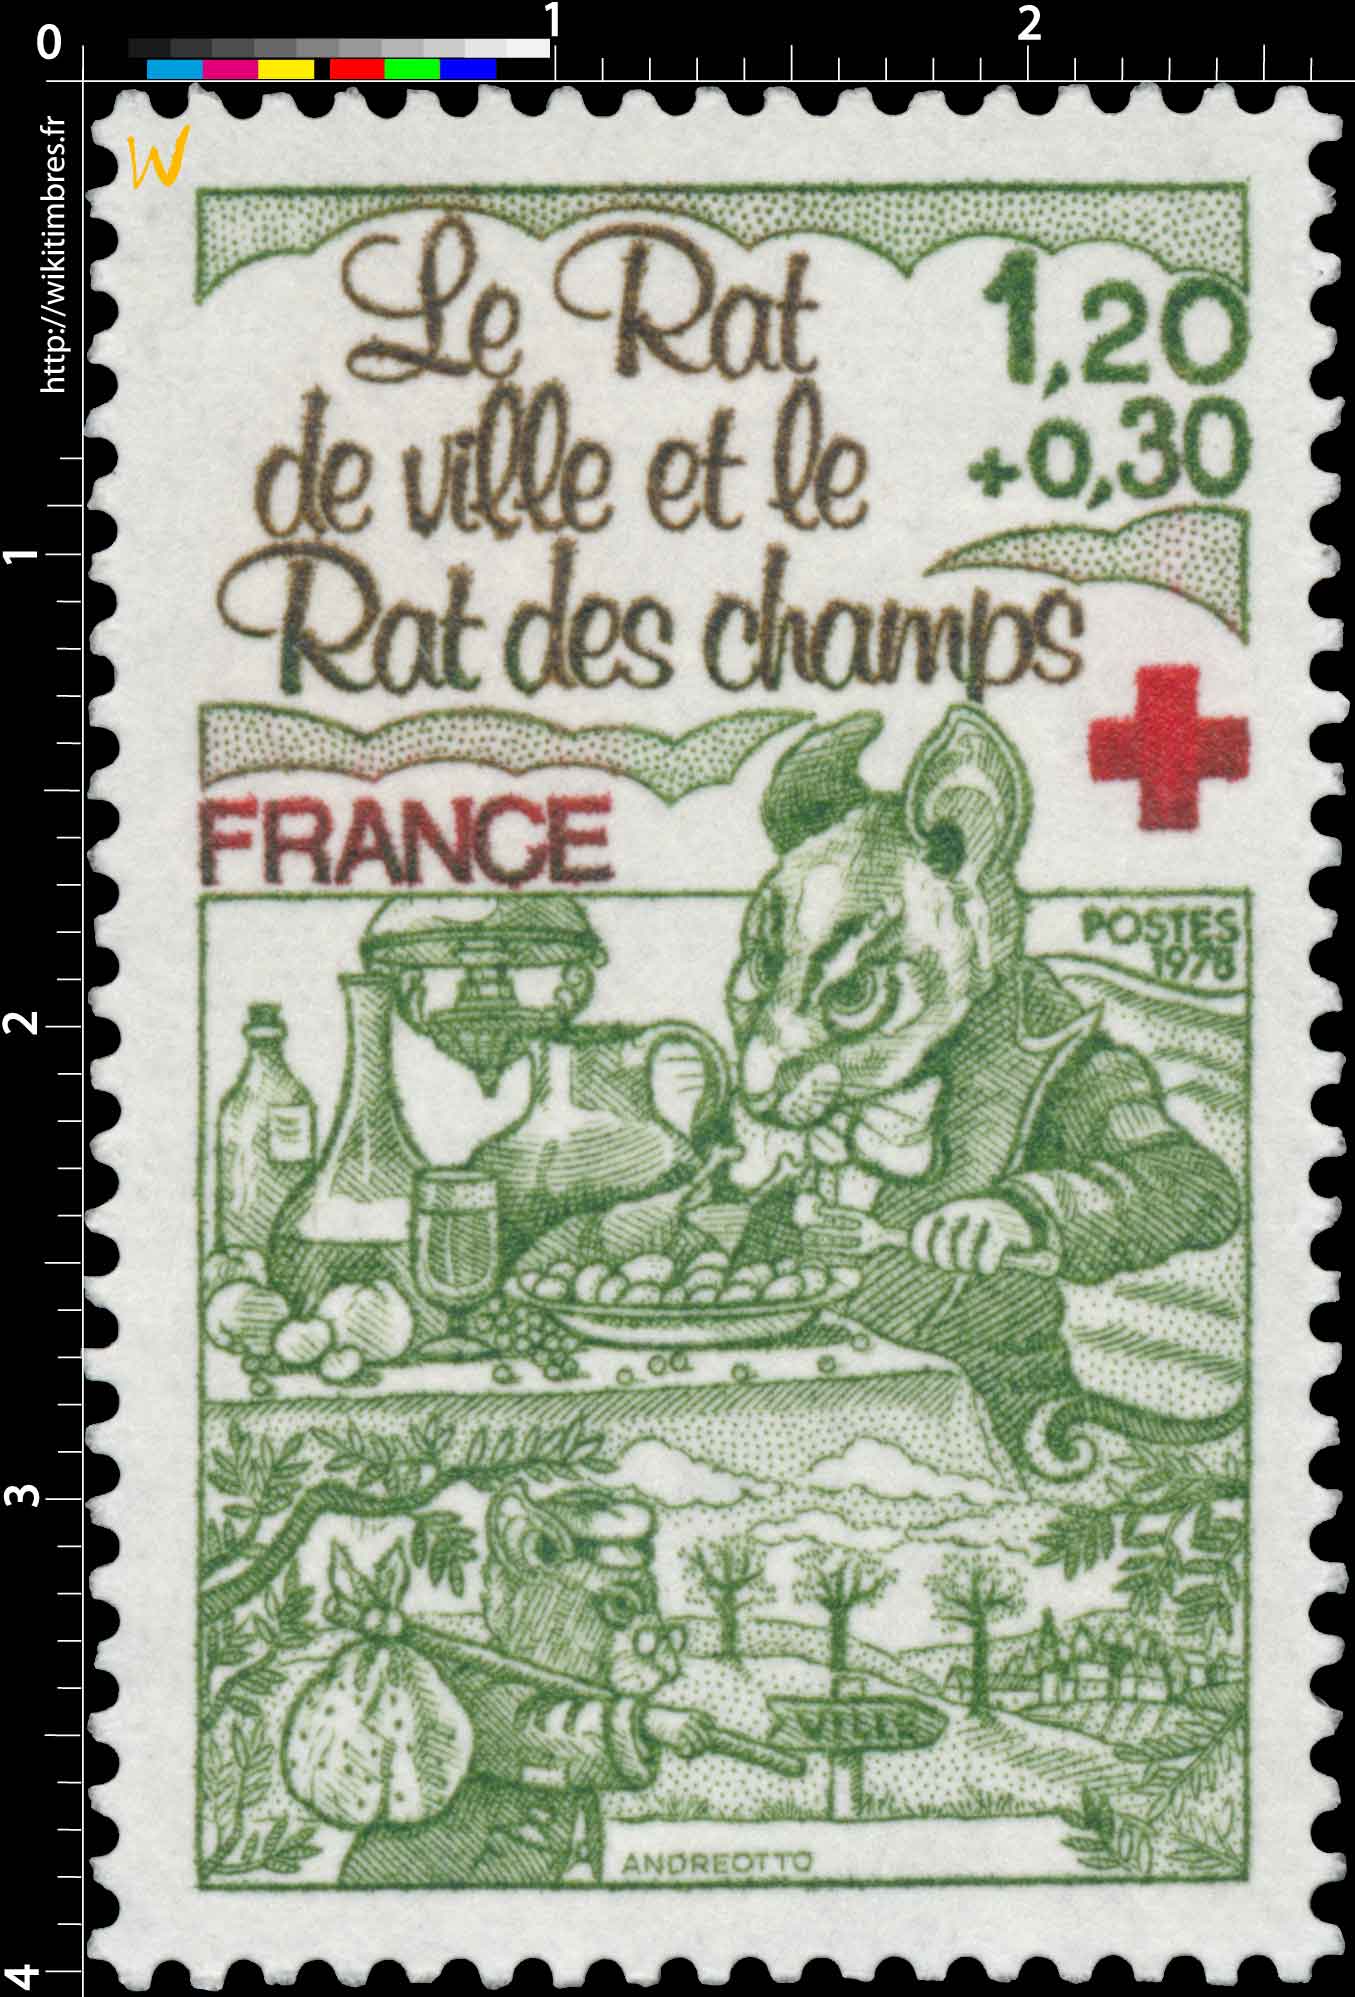 1978 Le Rat de ville et le Rat des champs